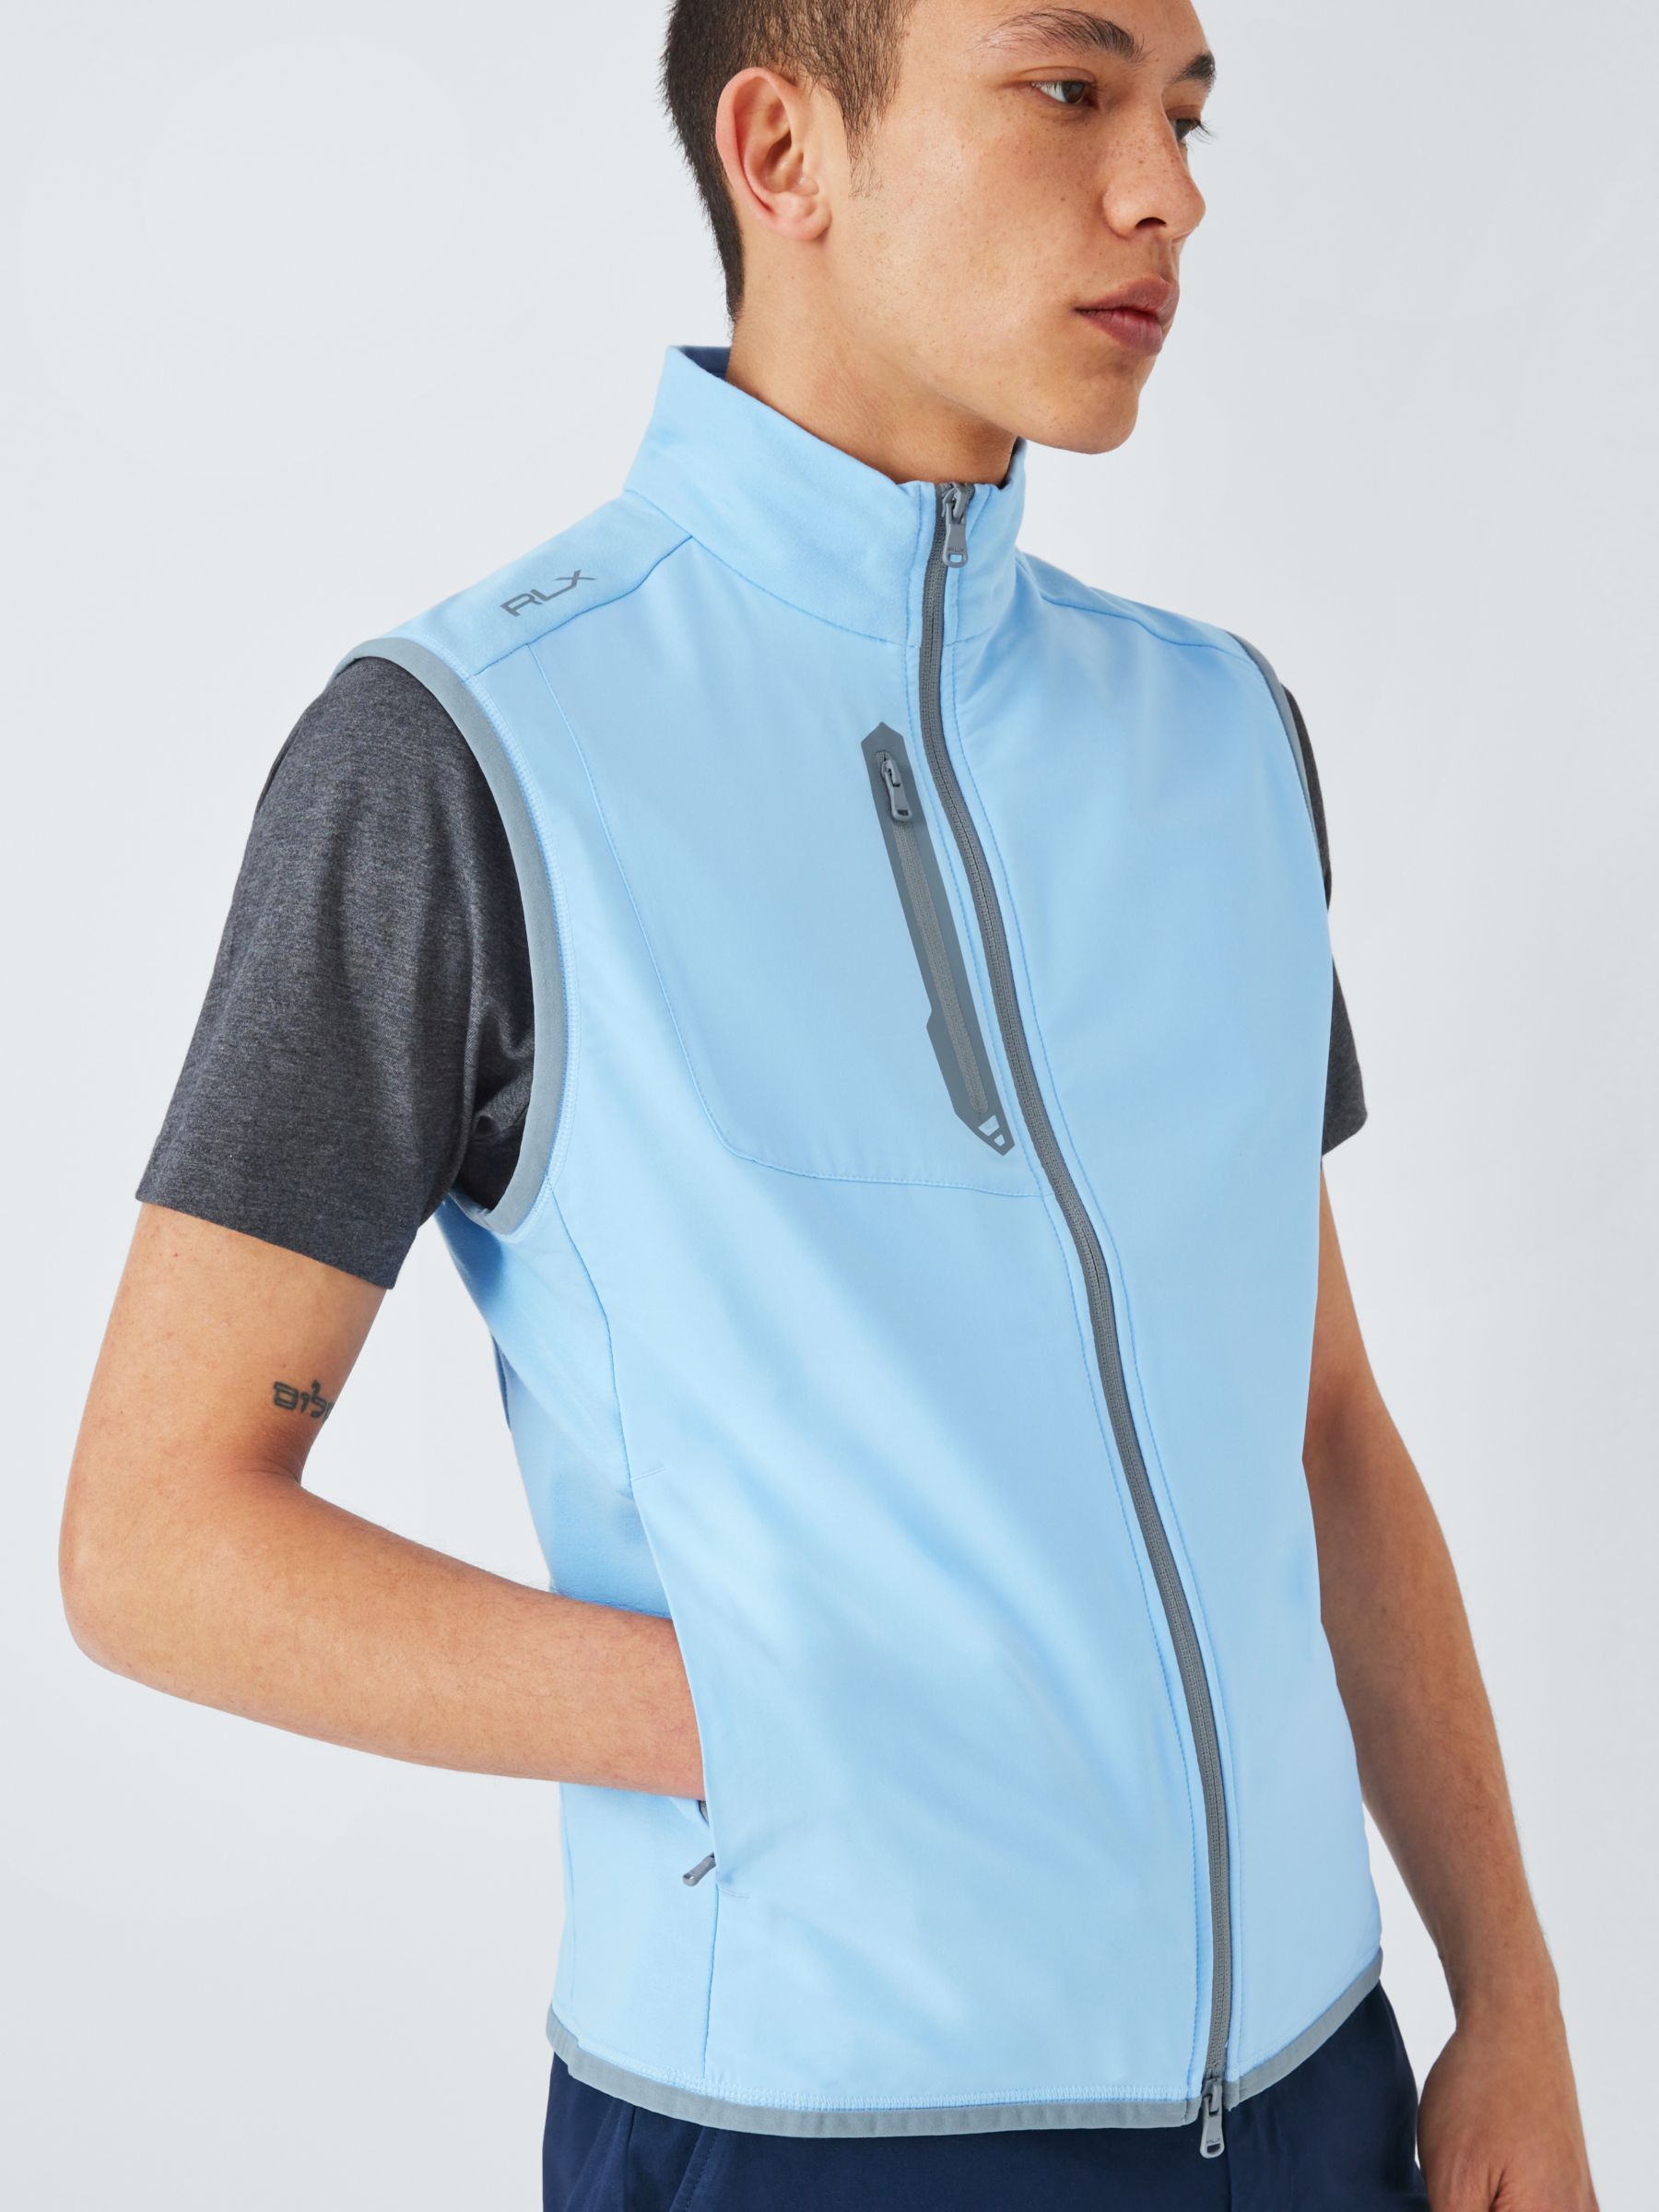 Ralph Lauren Hybrid Full Zip Vest Jacket , Light Blue, M